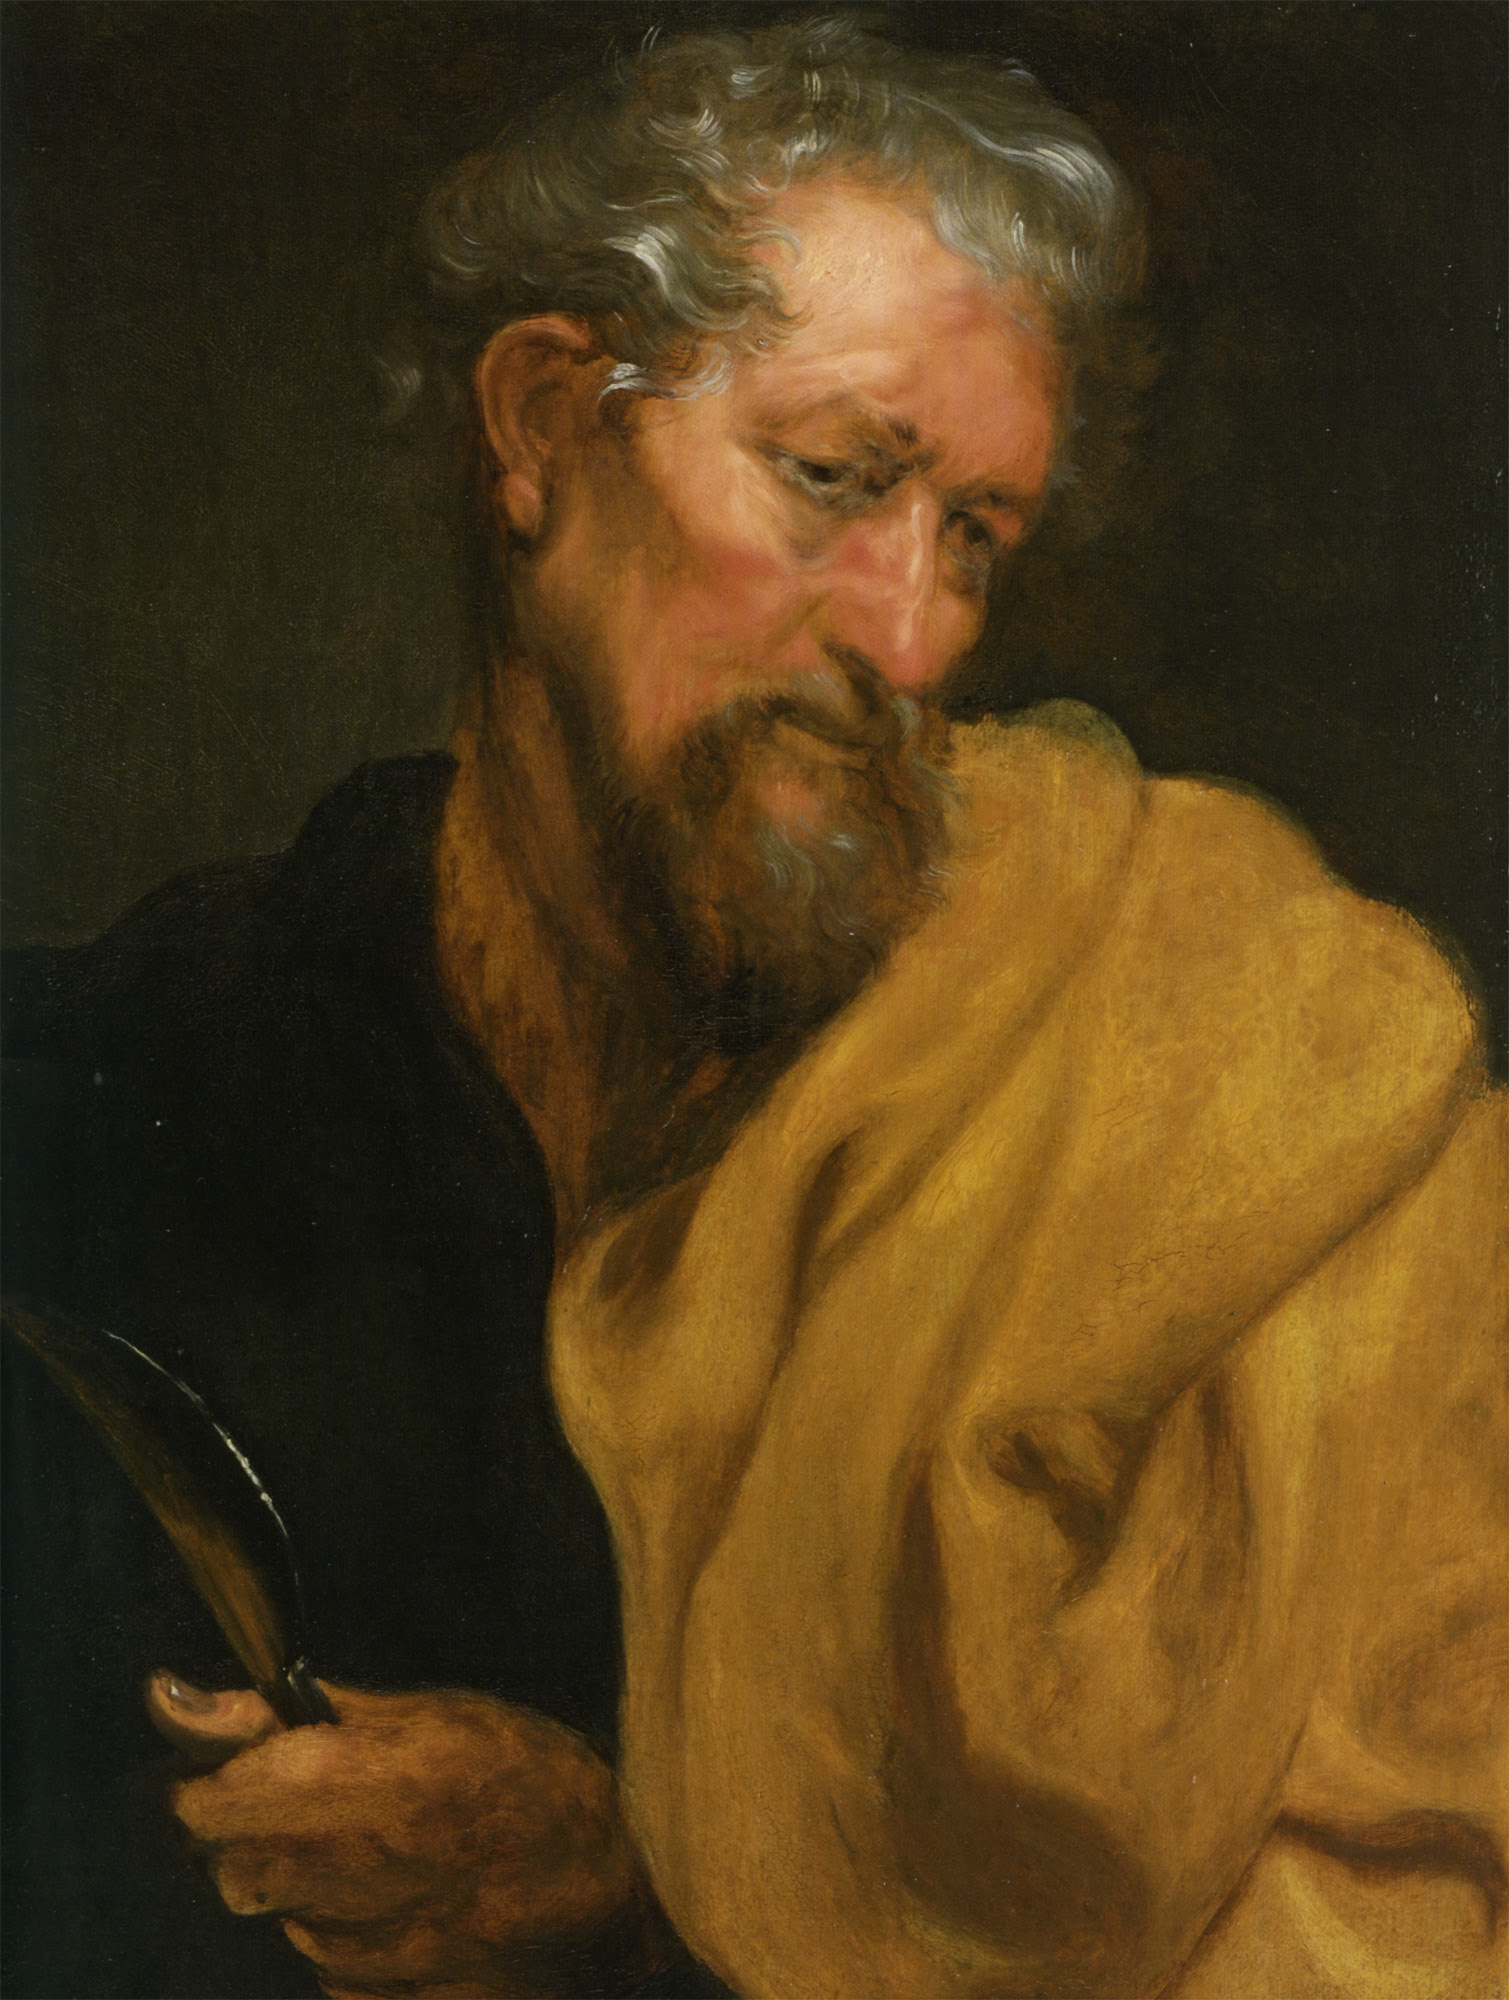 IMG ST. BARTHOLOMEW the Apostle